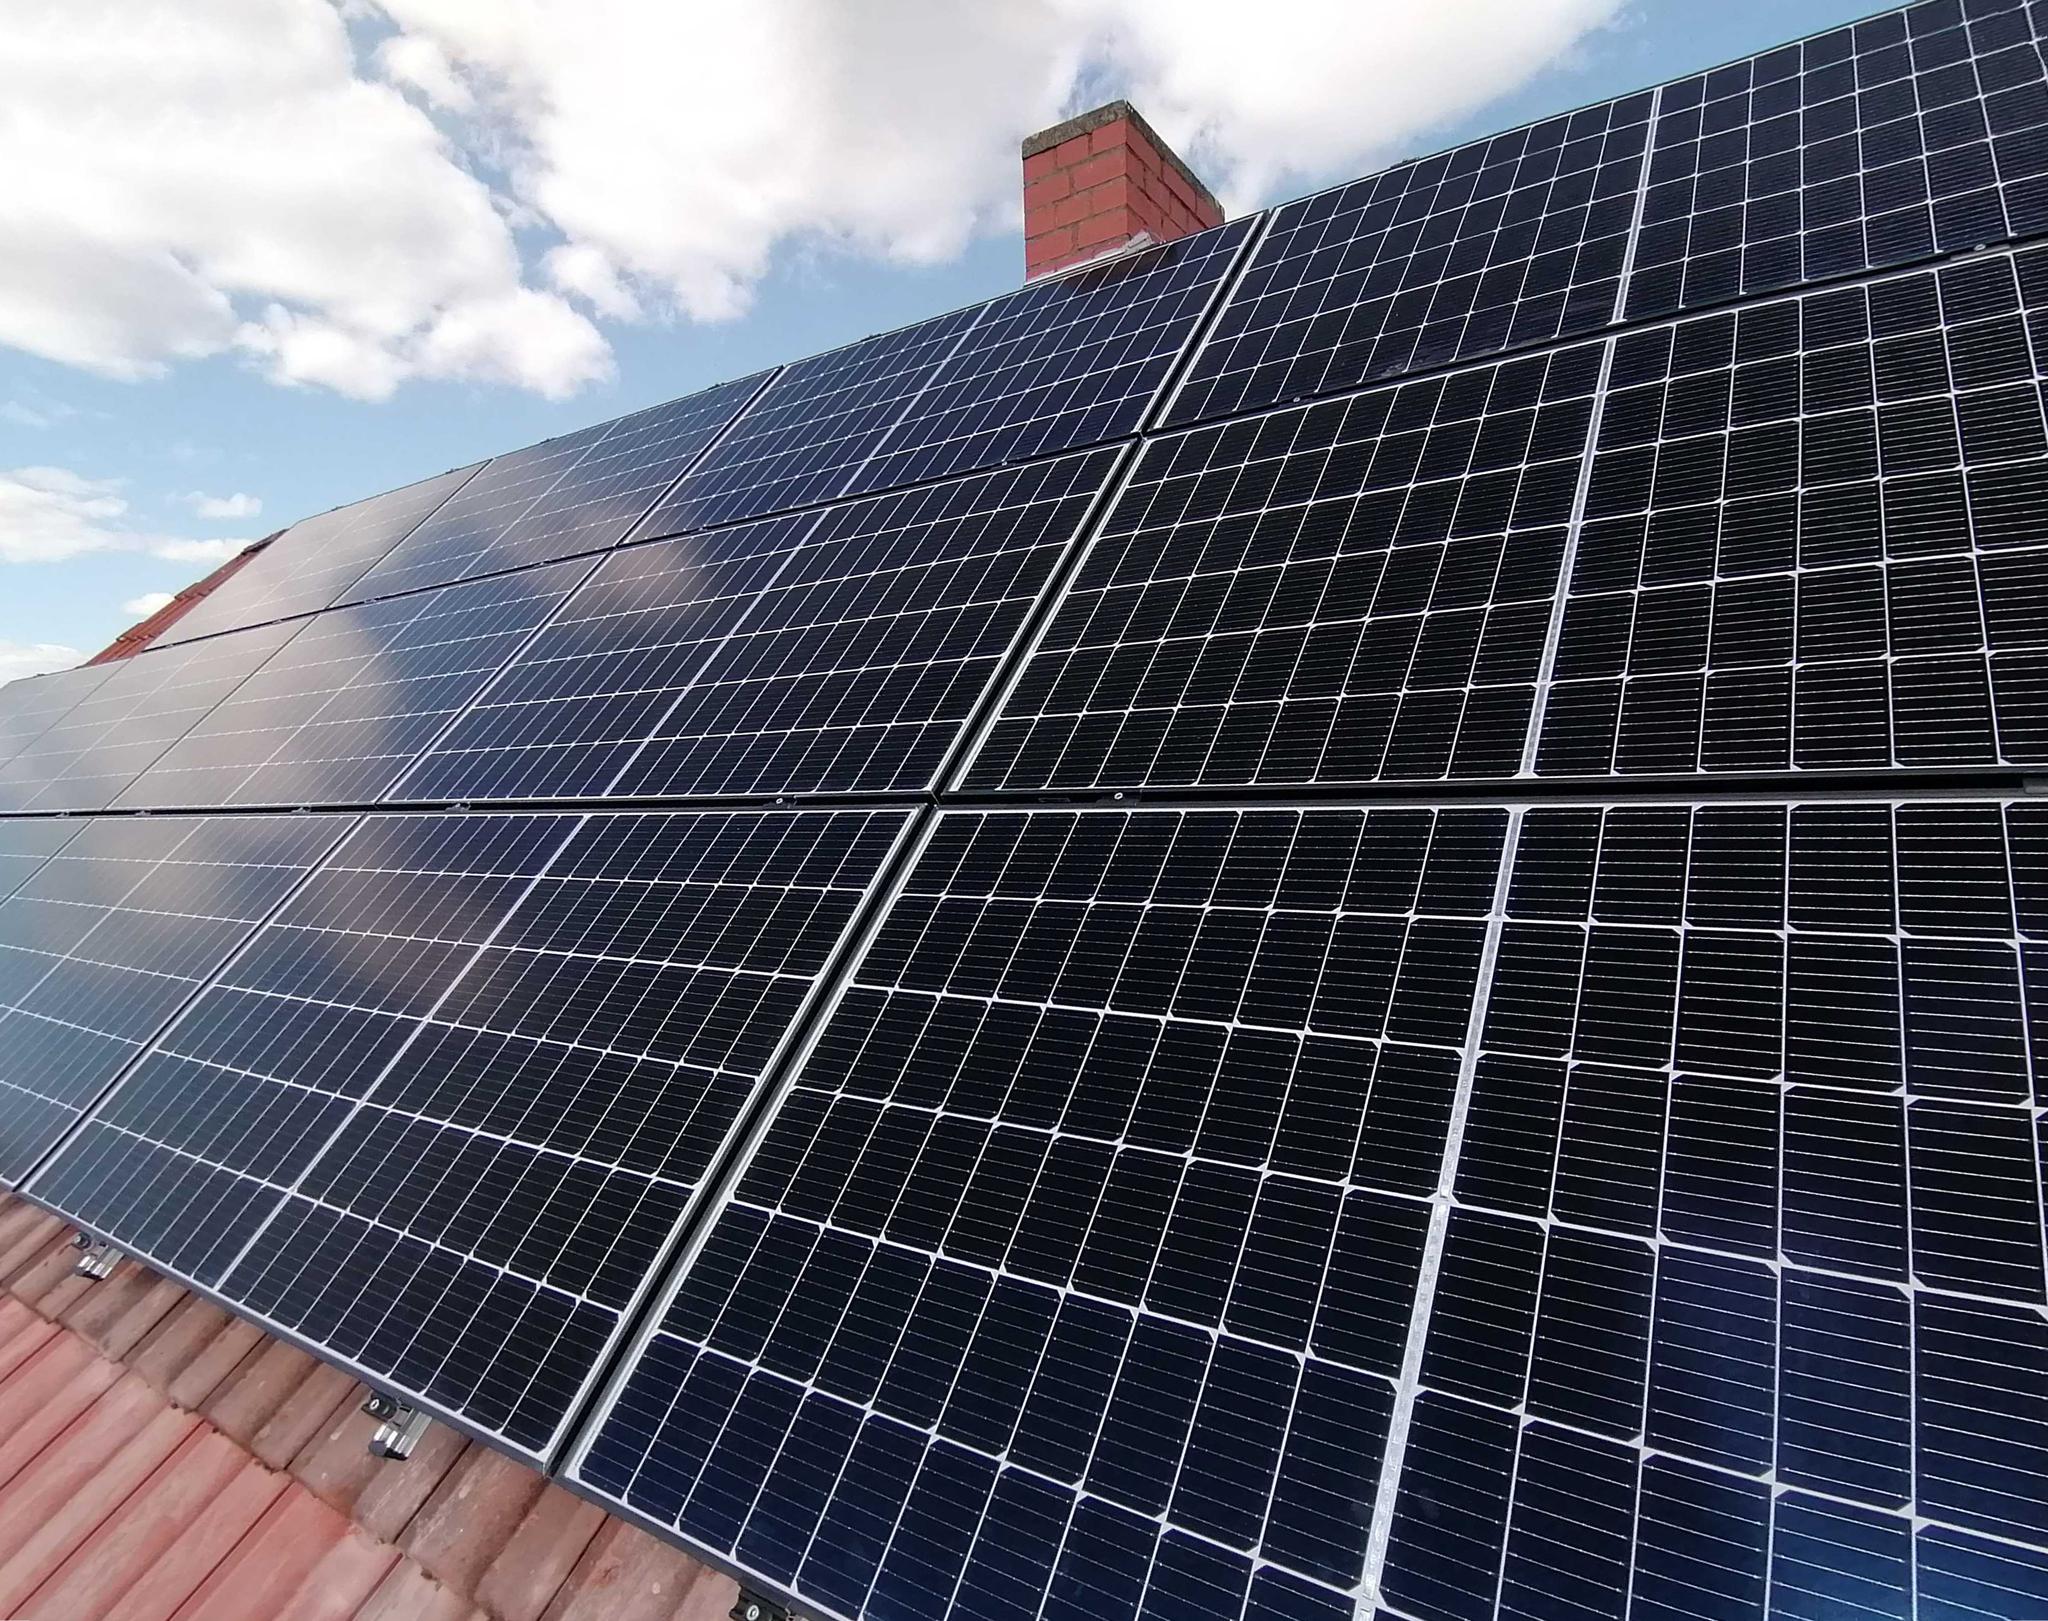 Solarmodule auf einem Hausdach - Photovoltaik mieten oder finanzieren mit zolar